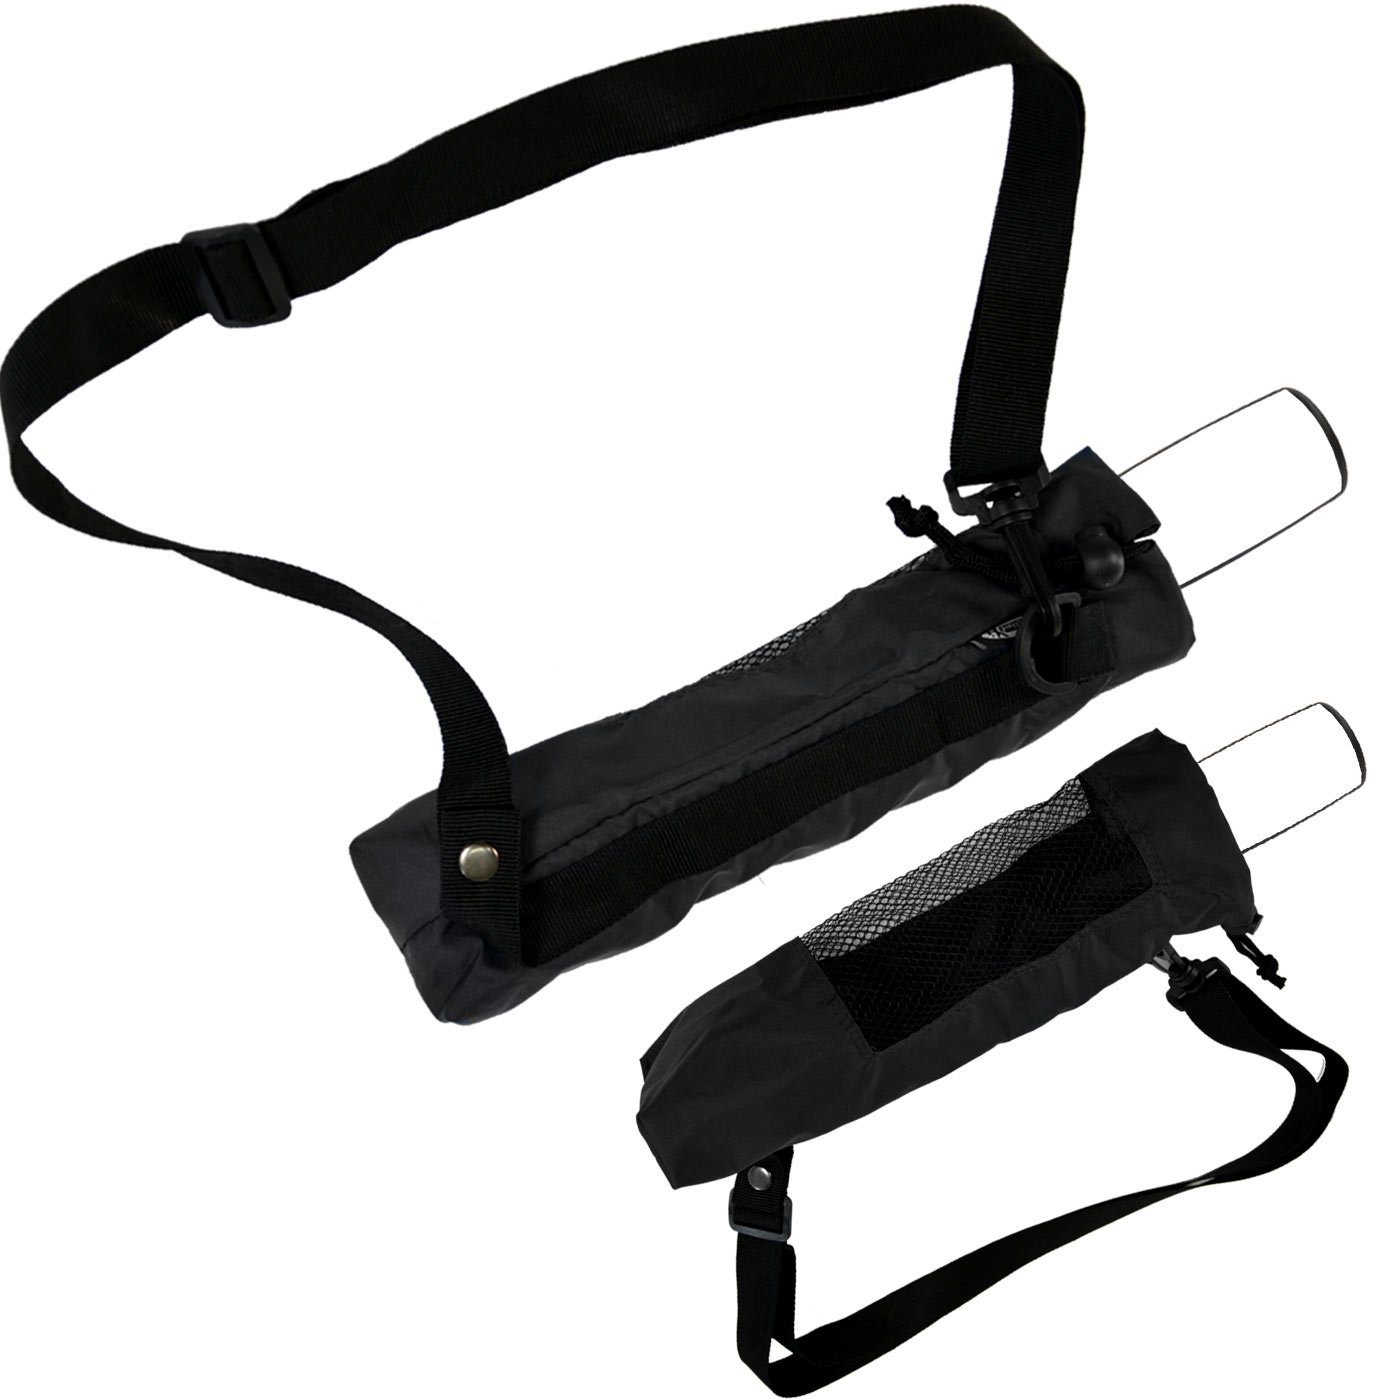 iX-brella Taschenregenschirm Trekking Hülle zum Taschenschirme, schwarz innovativ für Umhängen